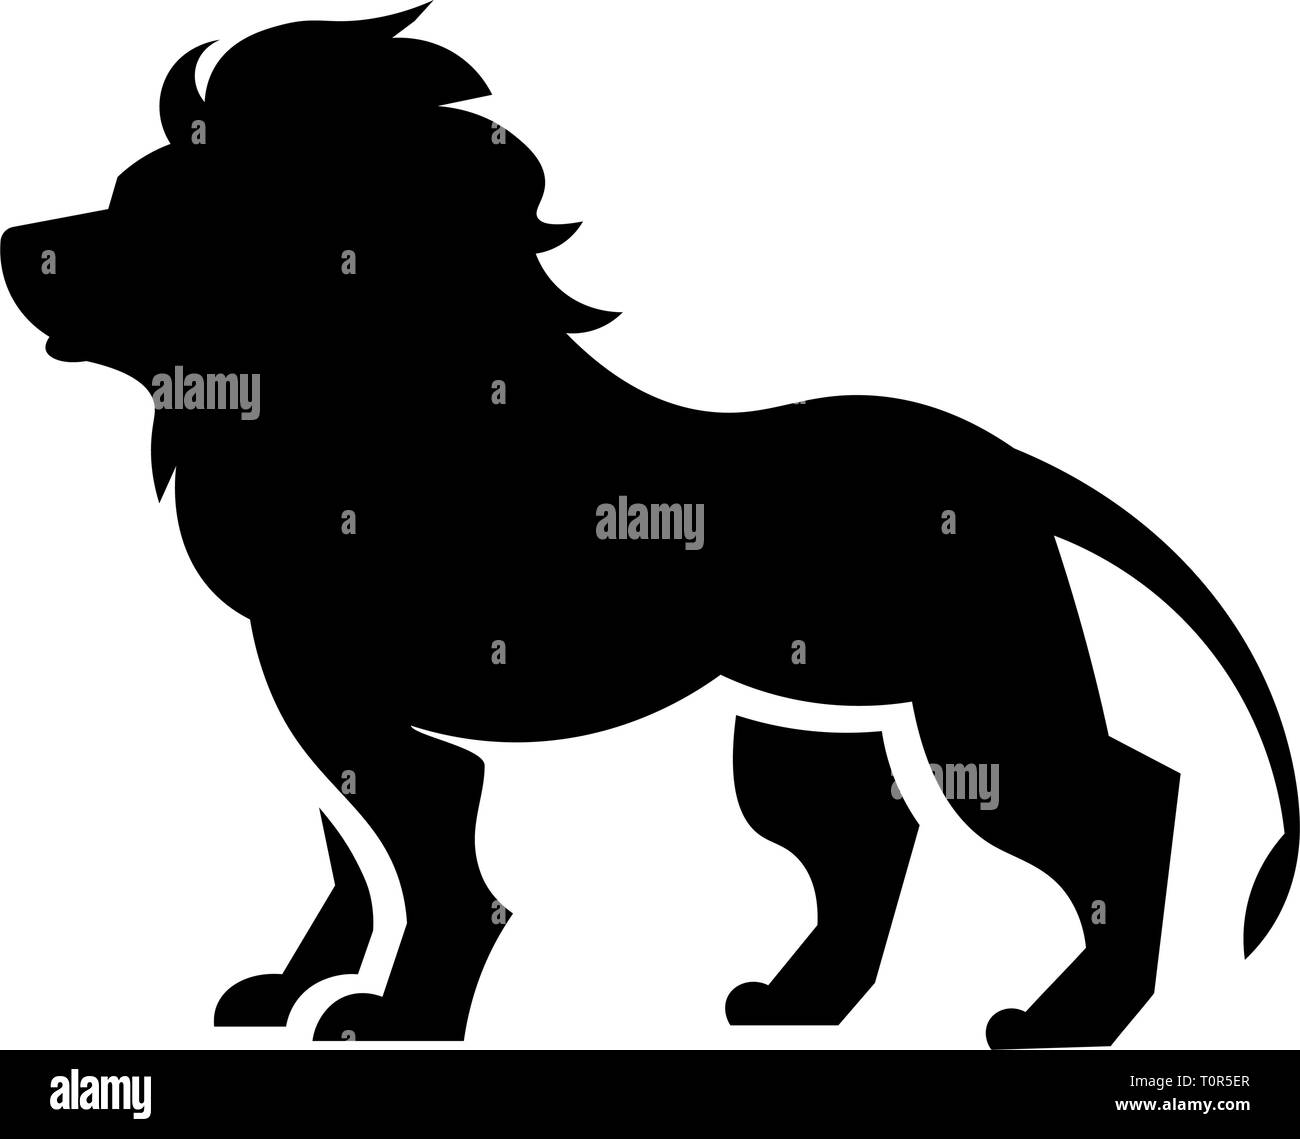 Ce vecteur image montre un lion africain permanent dans l'icône glyphe design. C'est isolé sur un fond blanc. Illustration de Vecteur